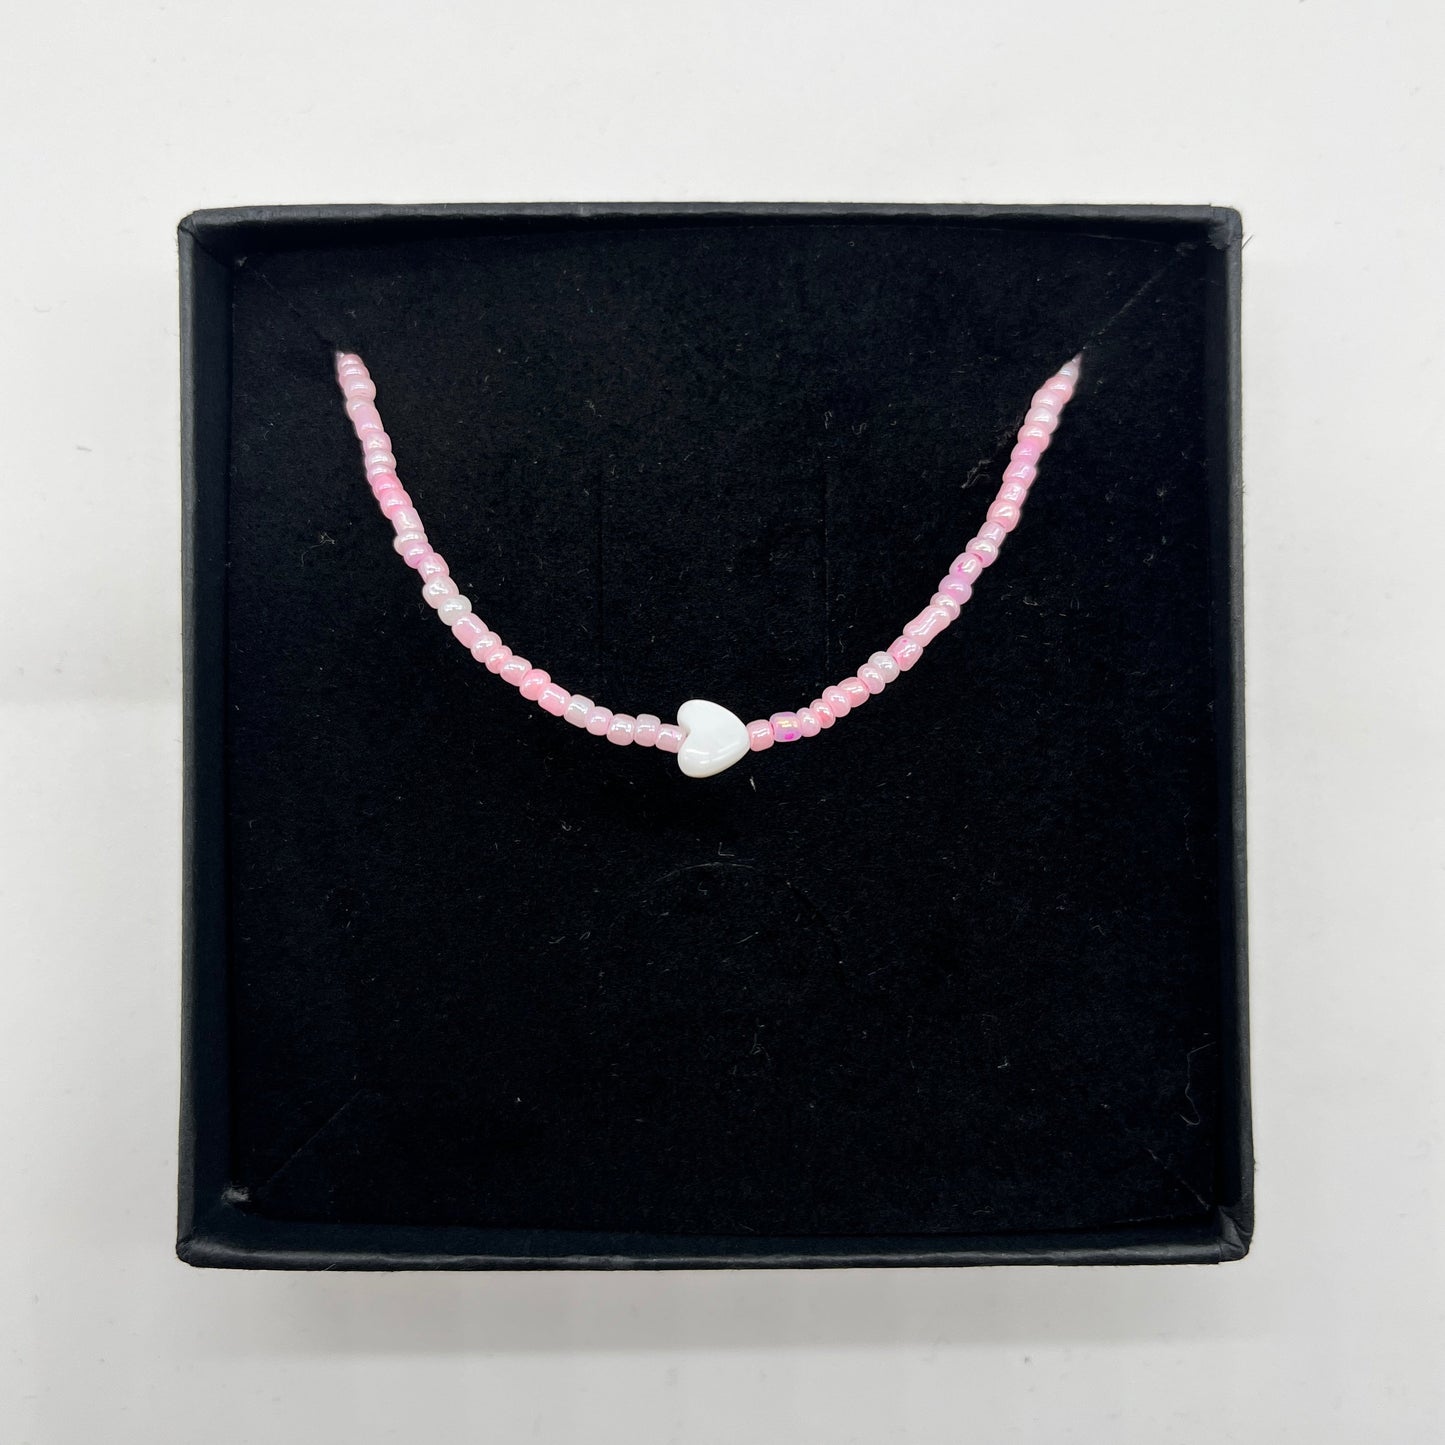 "Pink" Perlenkette mit kleinem Herz - ONYA